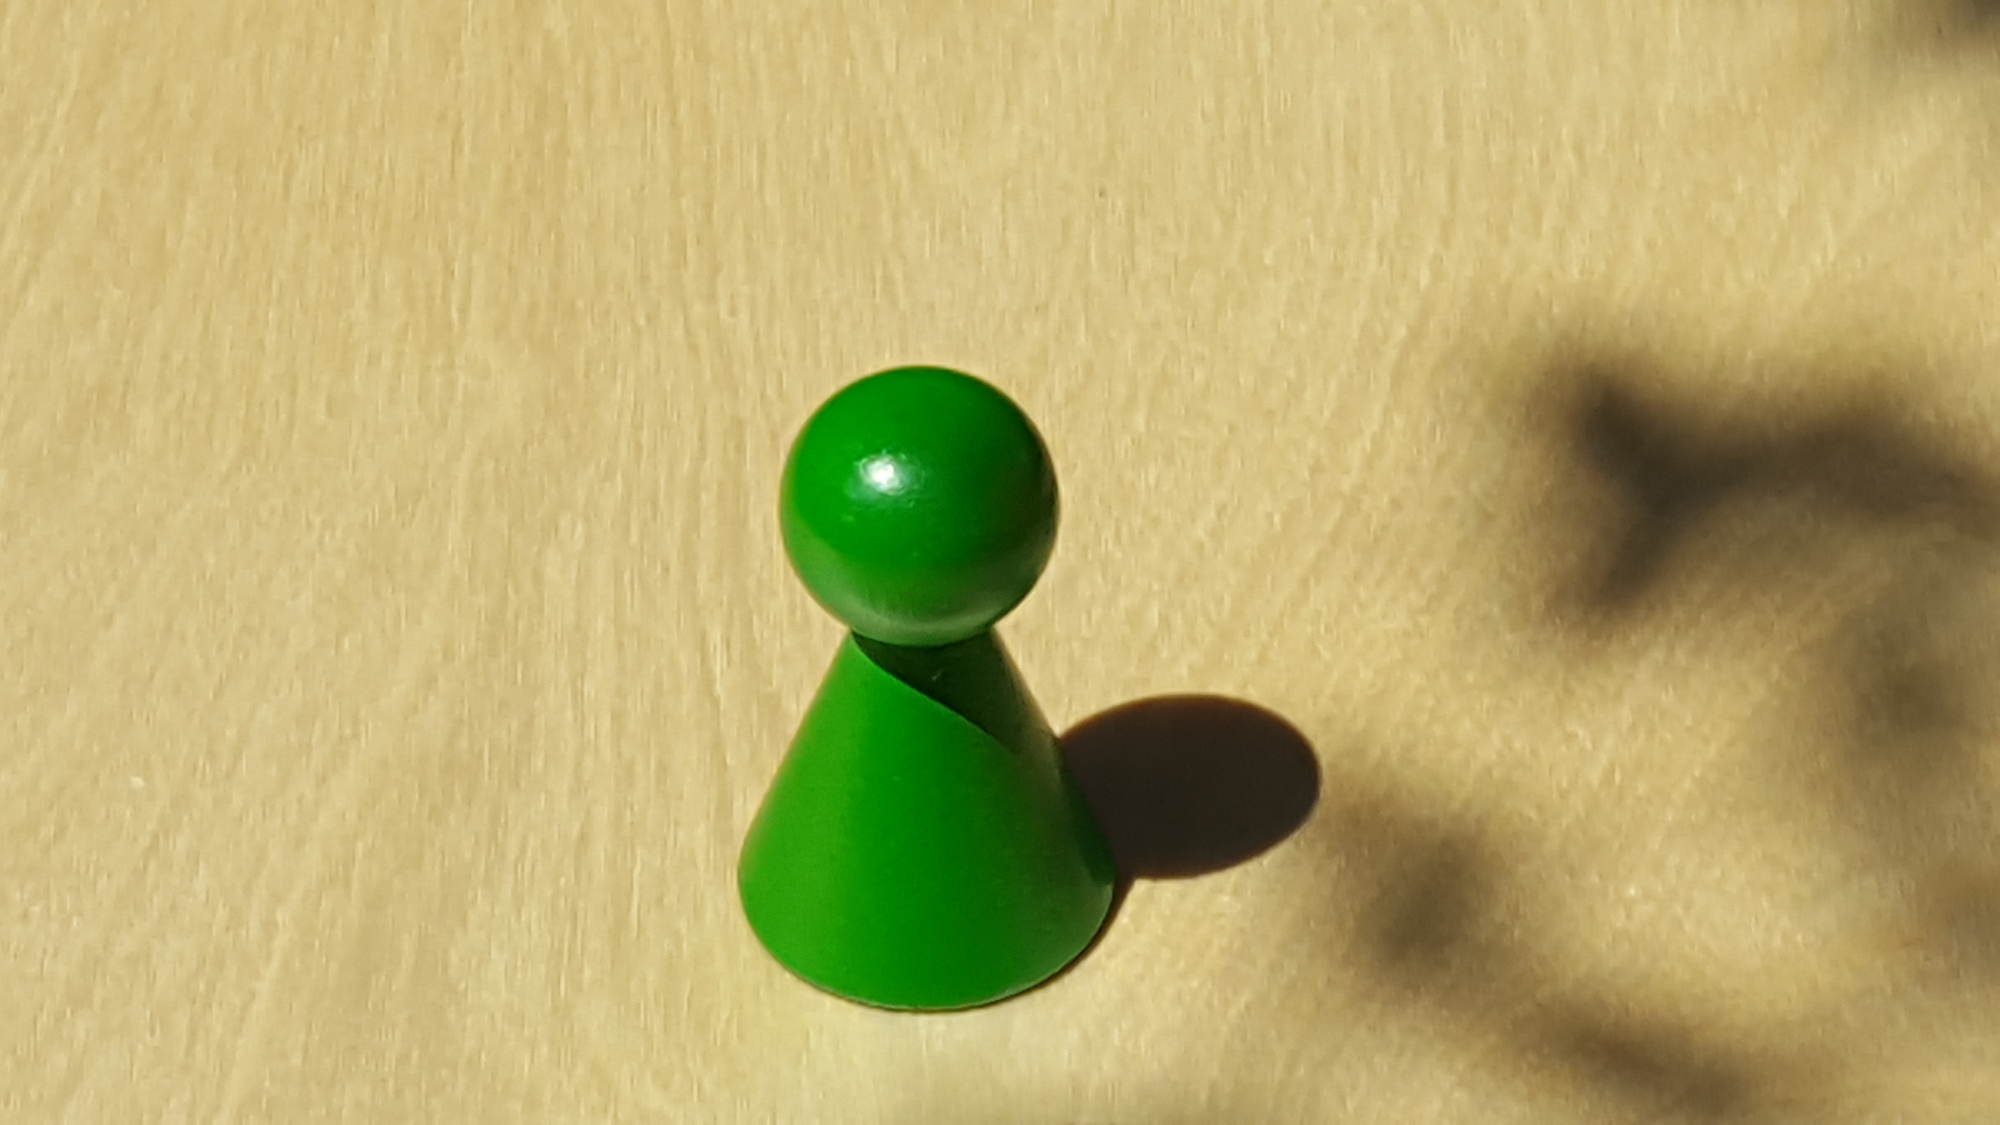 www.systembrett.at · Systembrett-Artikel · Einzel-Figur 7 cm in grün (ohne Augen);